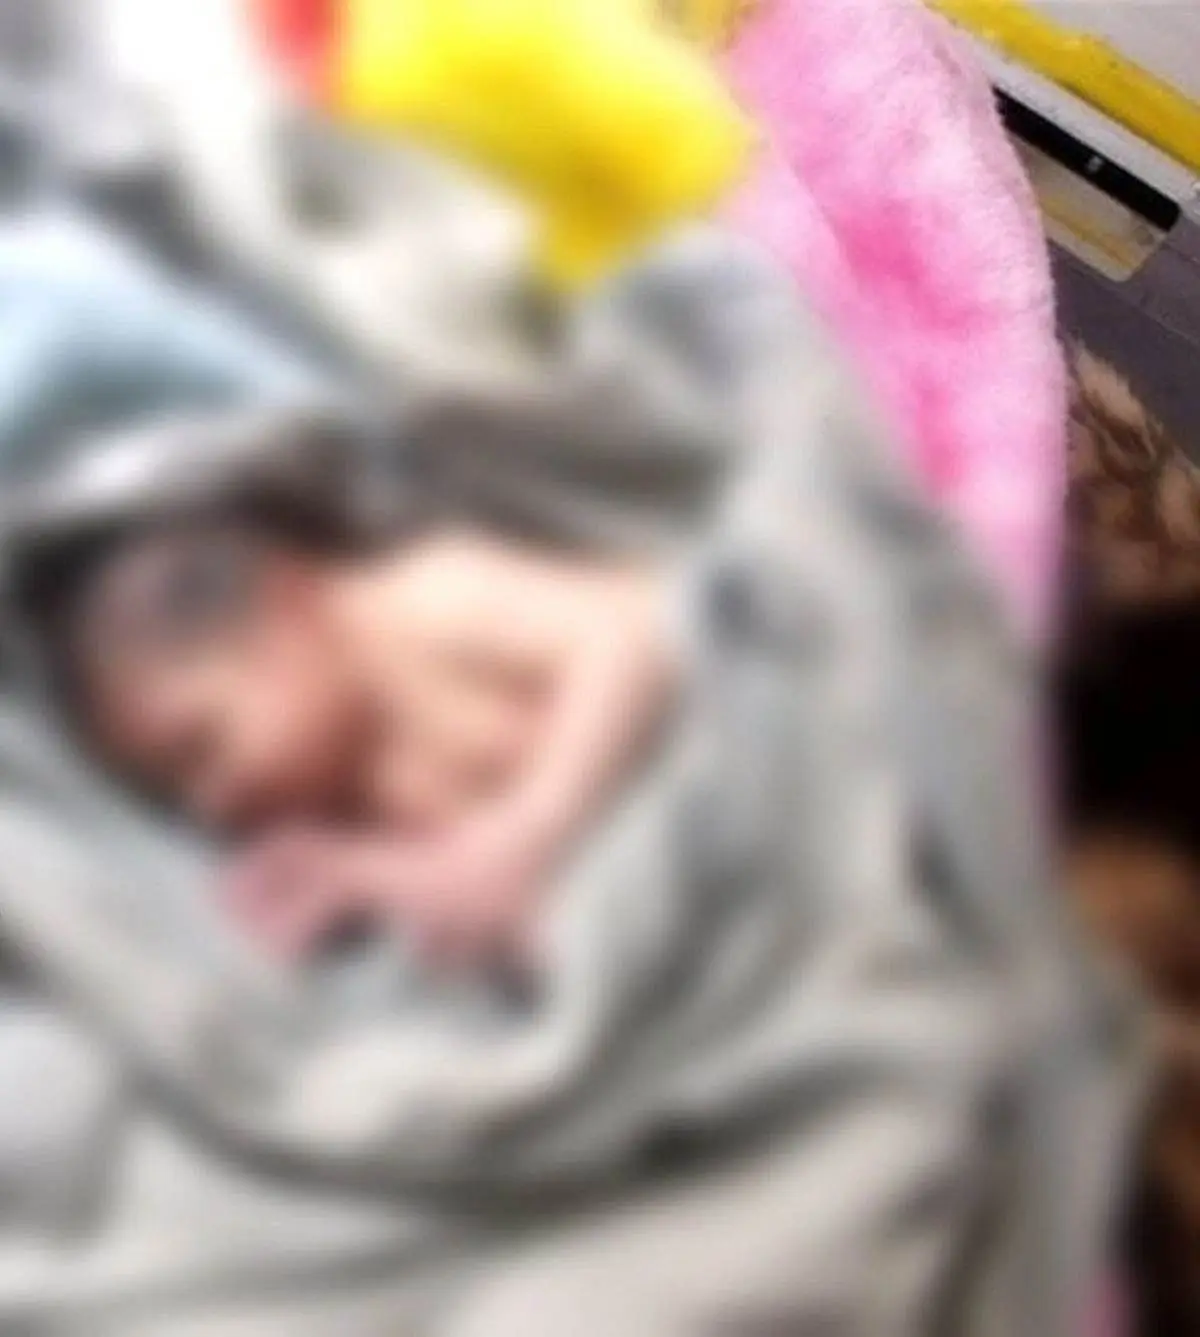 یک نوزاد دیگر در خیابان پیدا شد | این‌بار، نوزاد رهاشده در ونک